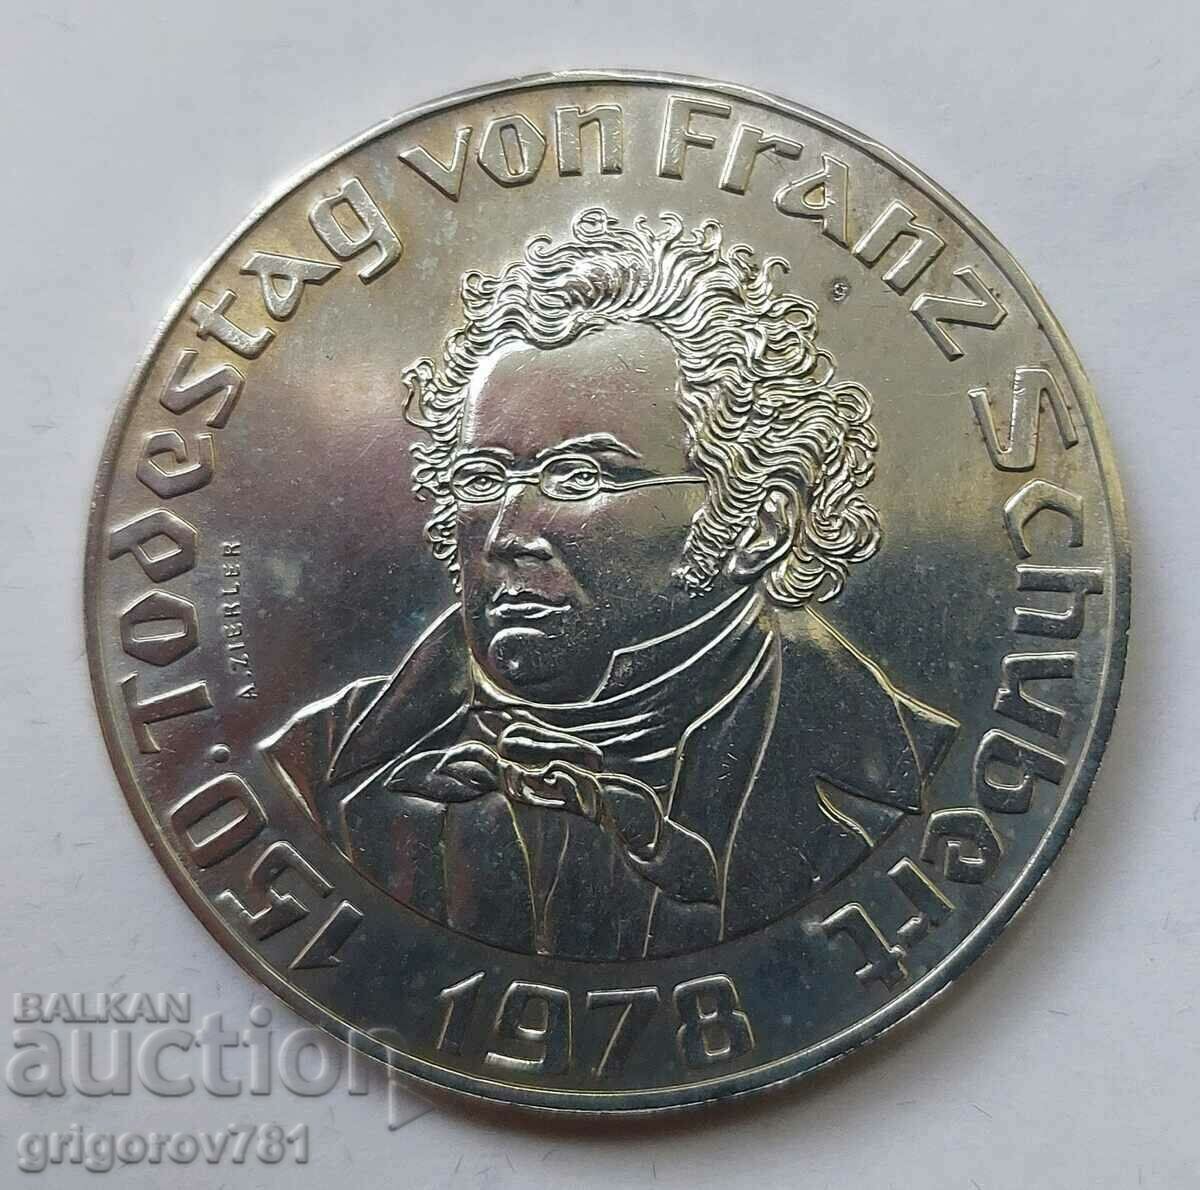 50 Shilling Silver Αυστρία 1978 - Ασημένιο νόμισμα #16